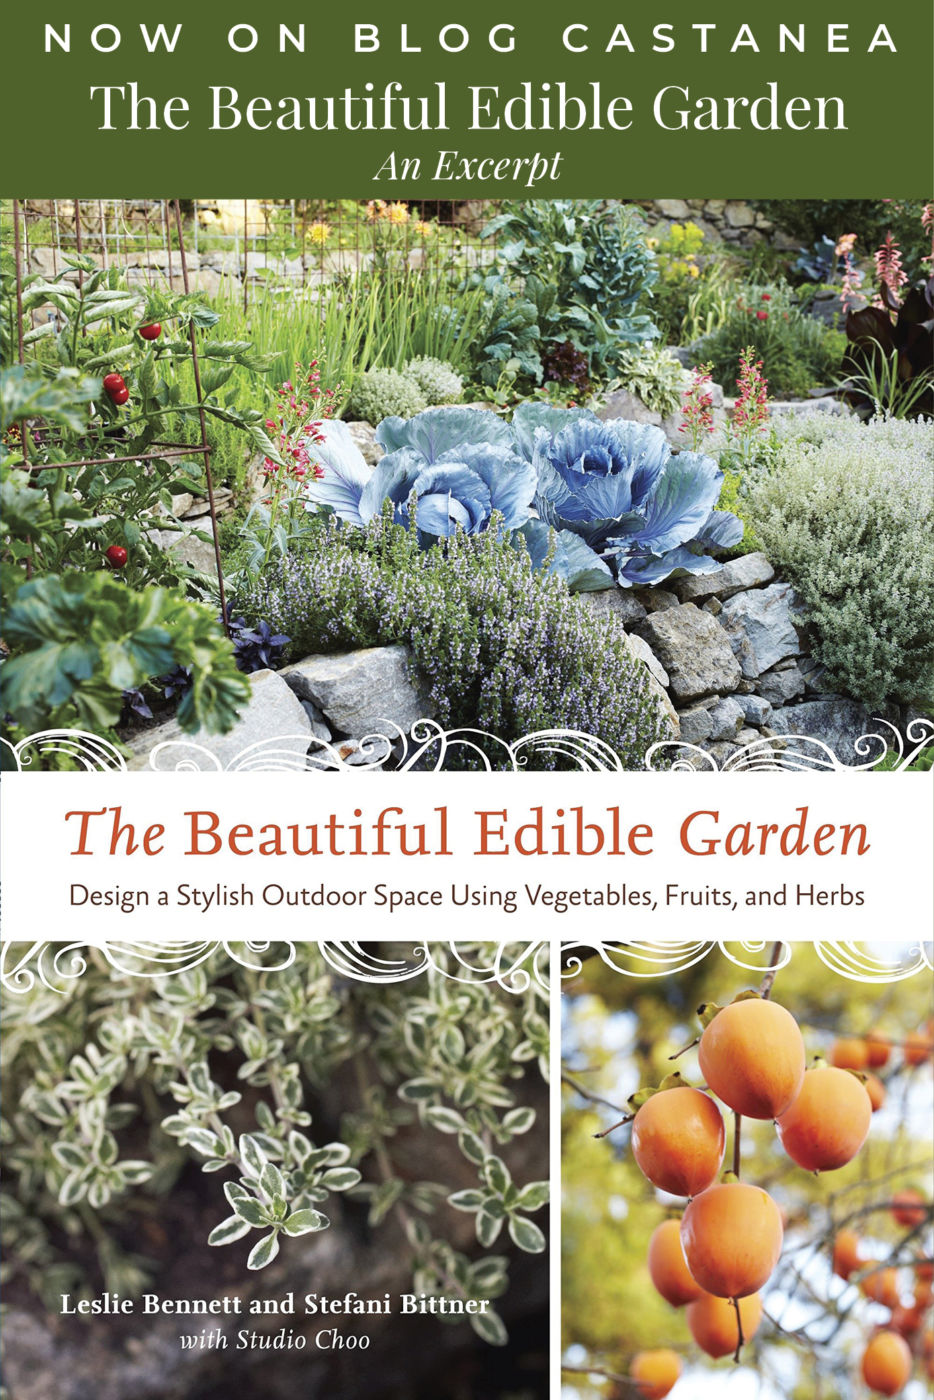 The Beautiful Edible Garden - An Excerpt